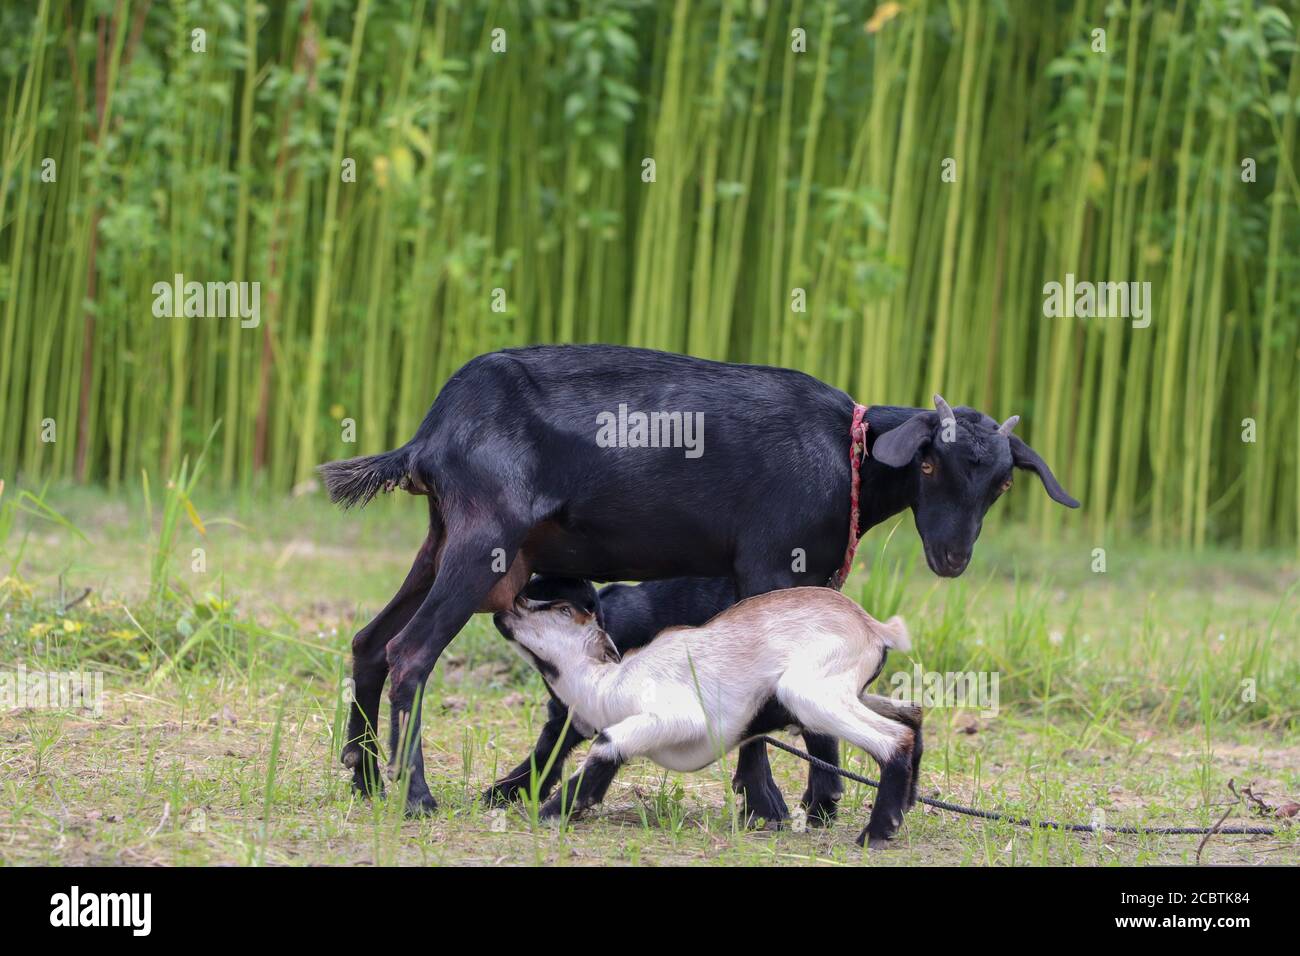 Ziegenmutter füttert zwei Ziegen in einem landwirtschaftlichen Feld Stockfoto